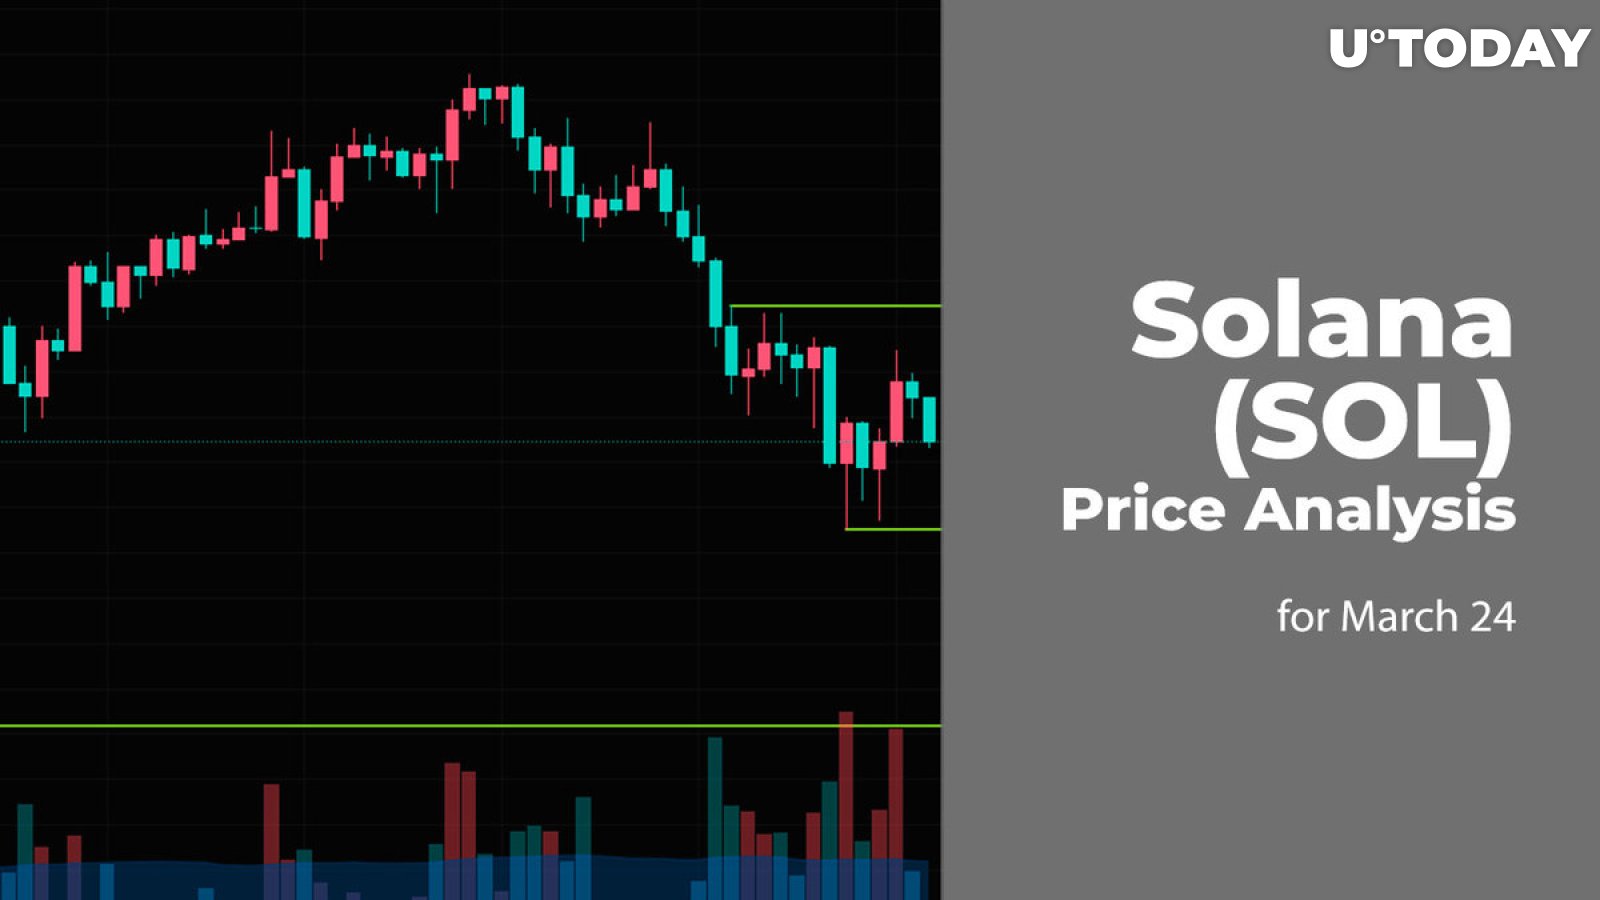 Solana (SOL) Price Prediction for March 24